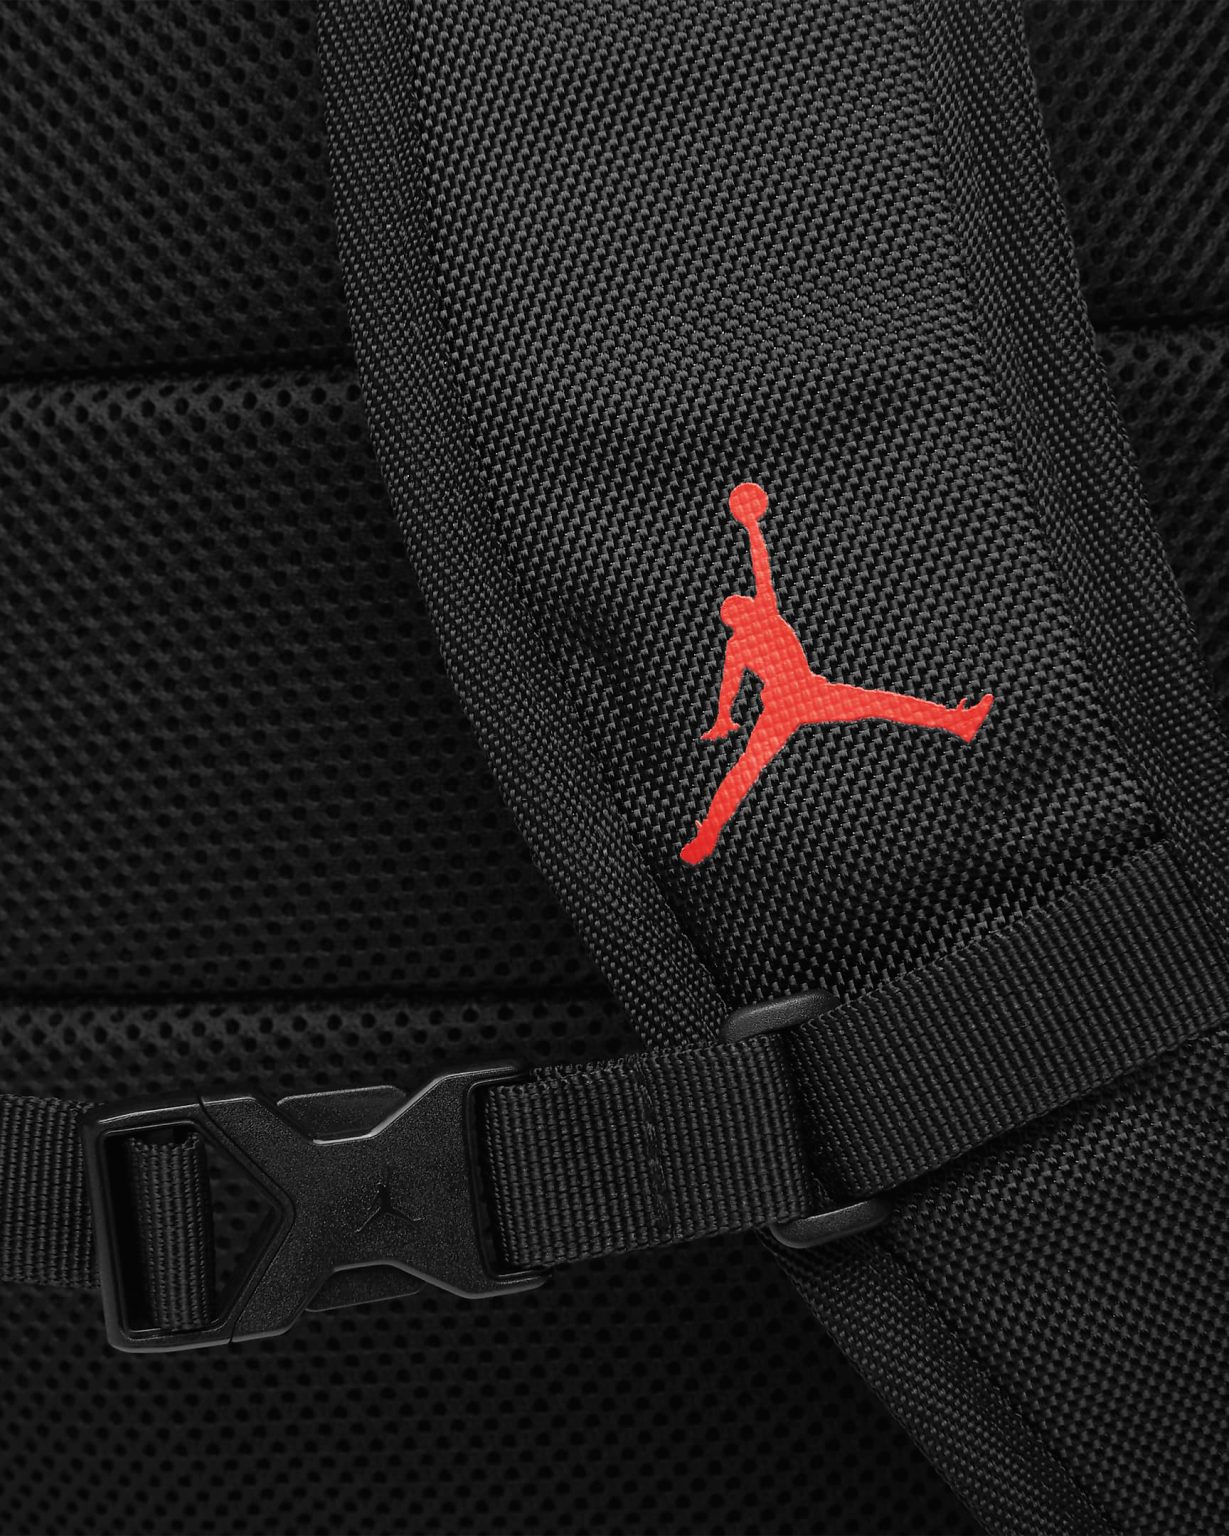 Jordan Moto Backpack Inspired by Air Jordan 14 Last Shot